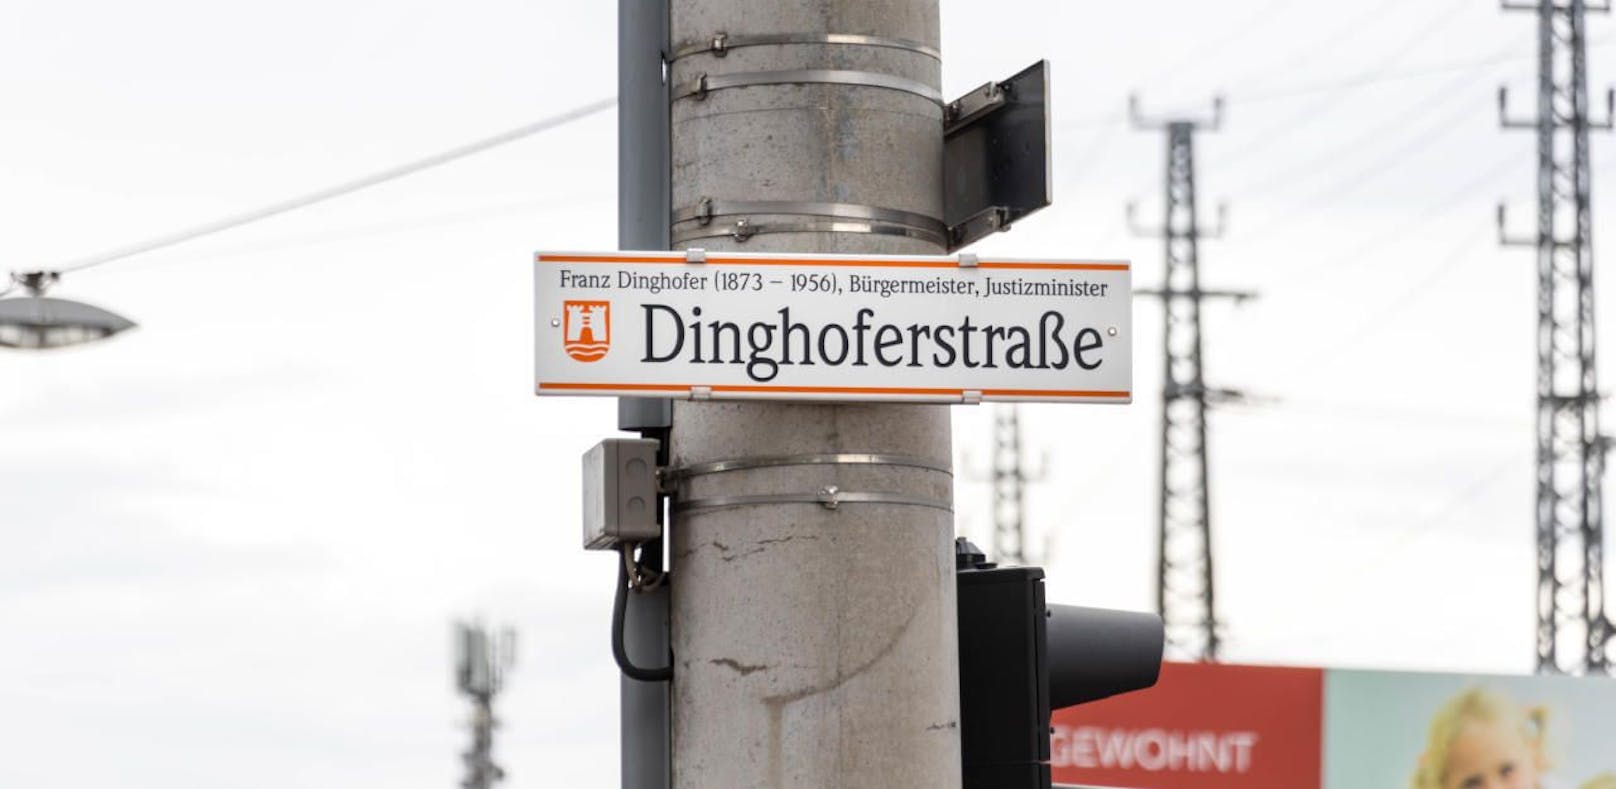 Franz Dinghofer war NSDAP-Mitglied. Muss die Straße jetzt umbenannt werden?